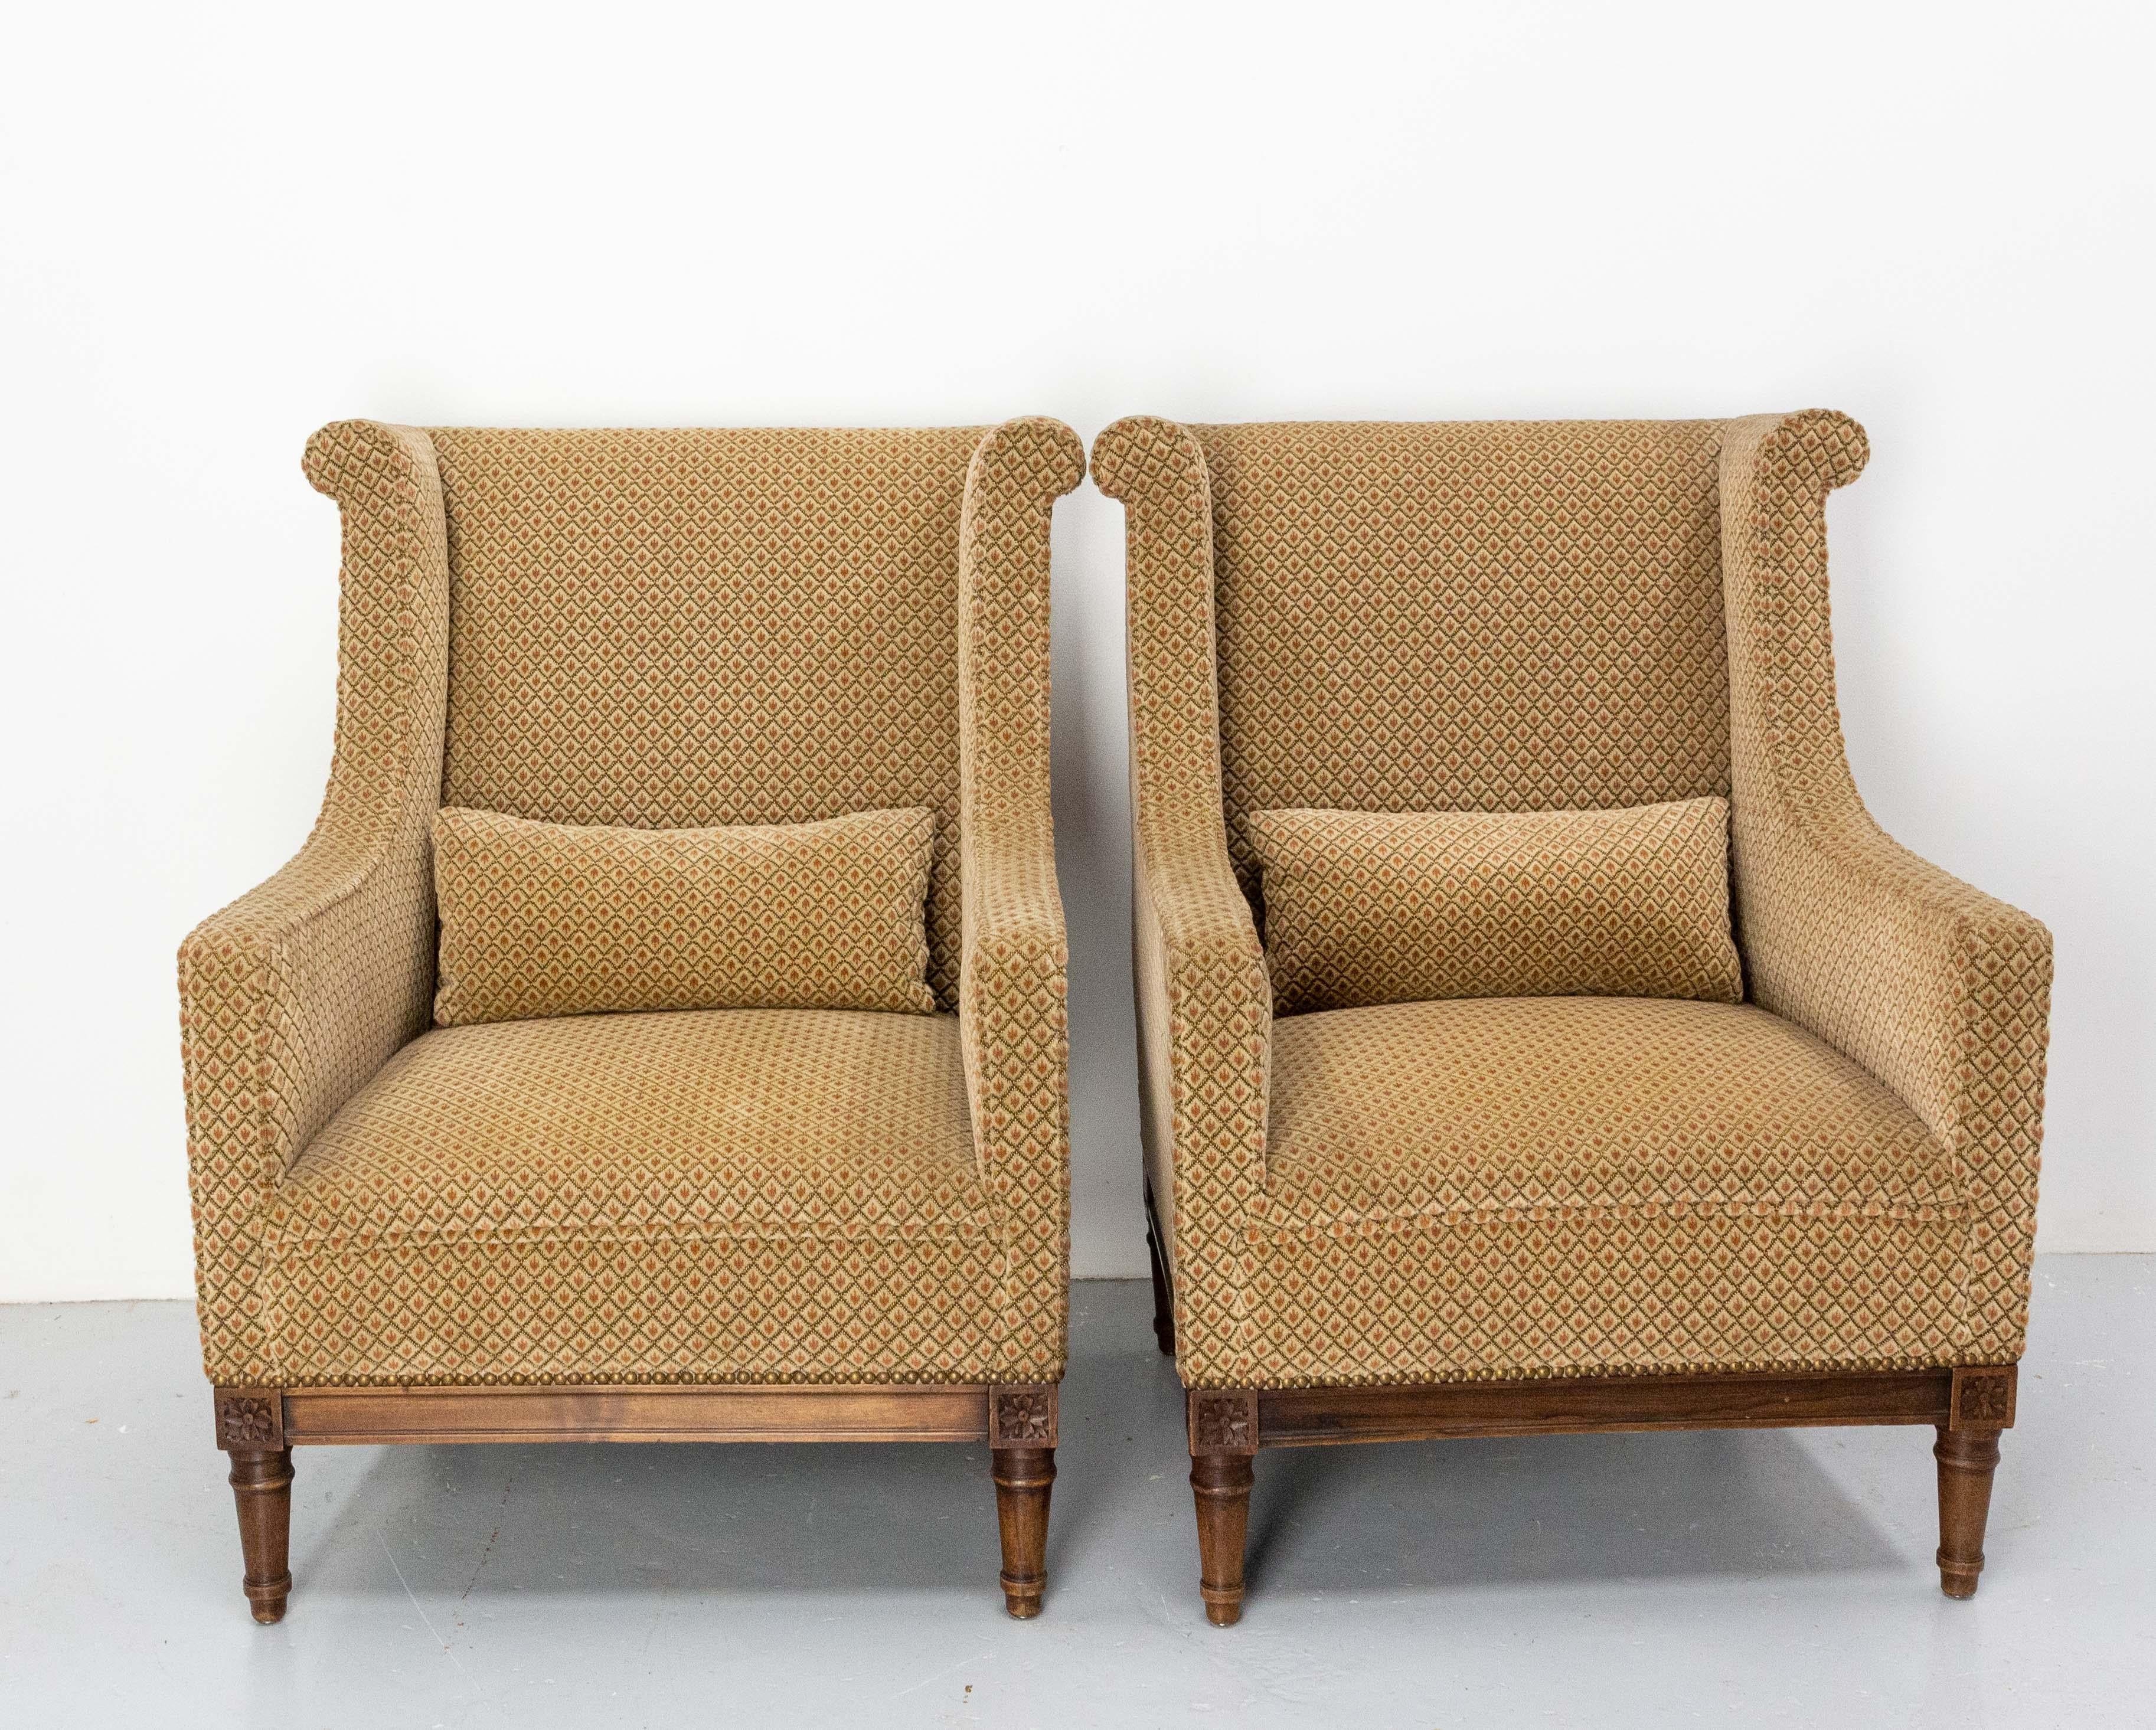 Paar fauteuil Sessel Französisch Napoleon III, um 1880
Antike, spätes 19. Jahrhundert,
Solide und solide 
Es kann wiederhergestellt werden, wenn Sie wünschen, aber der Samt ist sauber und in gutem Zustand
Sehr bequem.

Versand:
L149 P72 H72